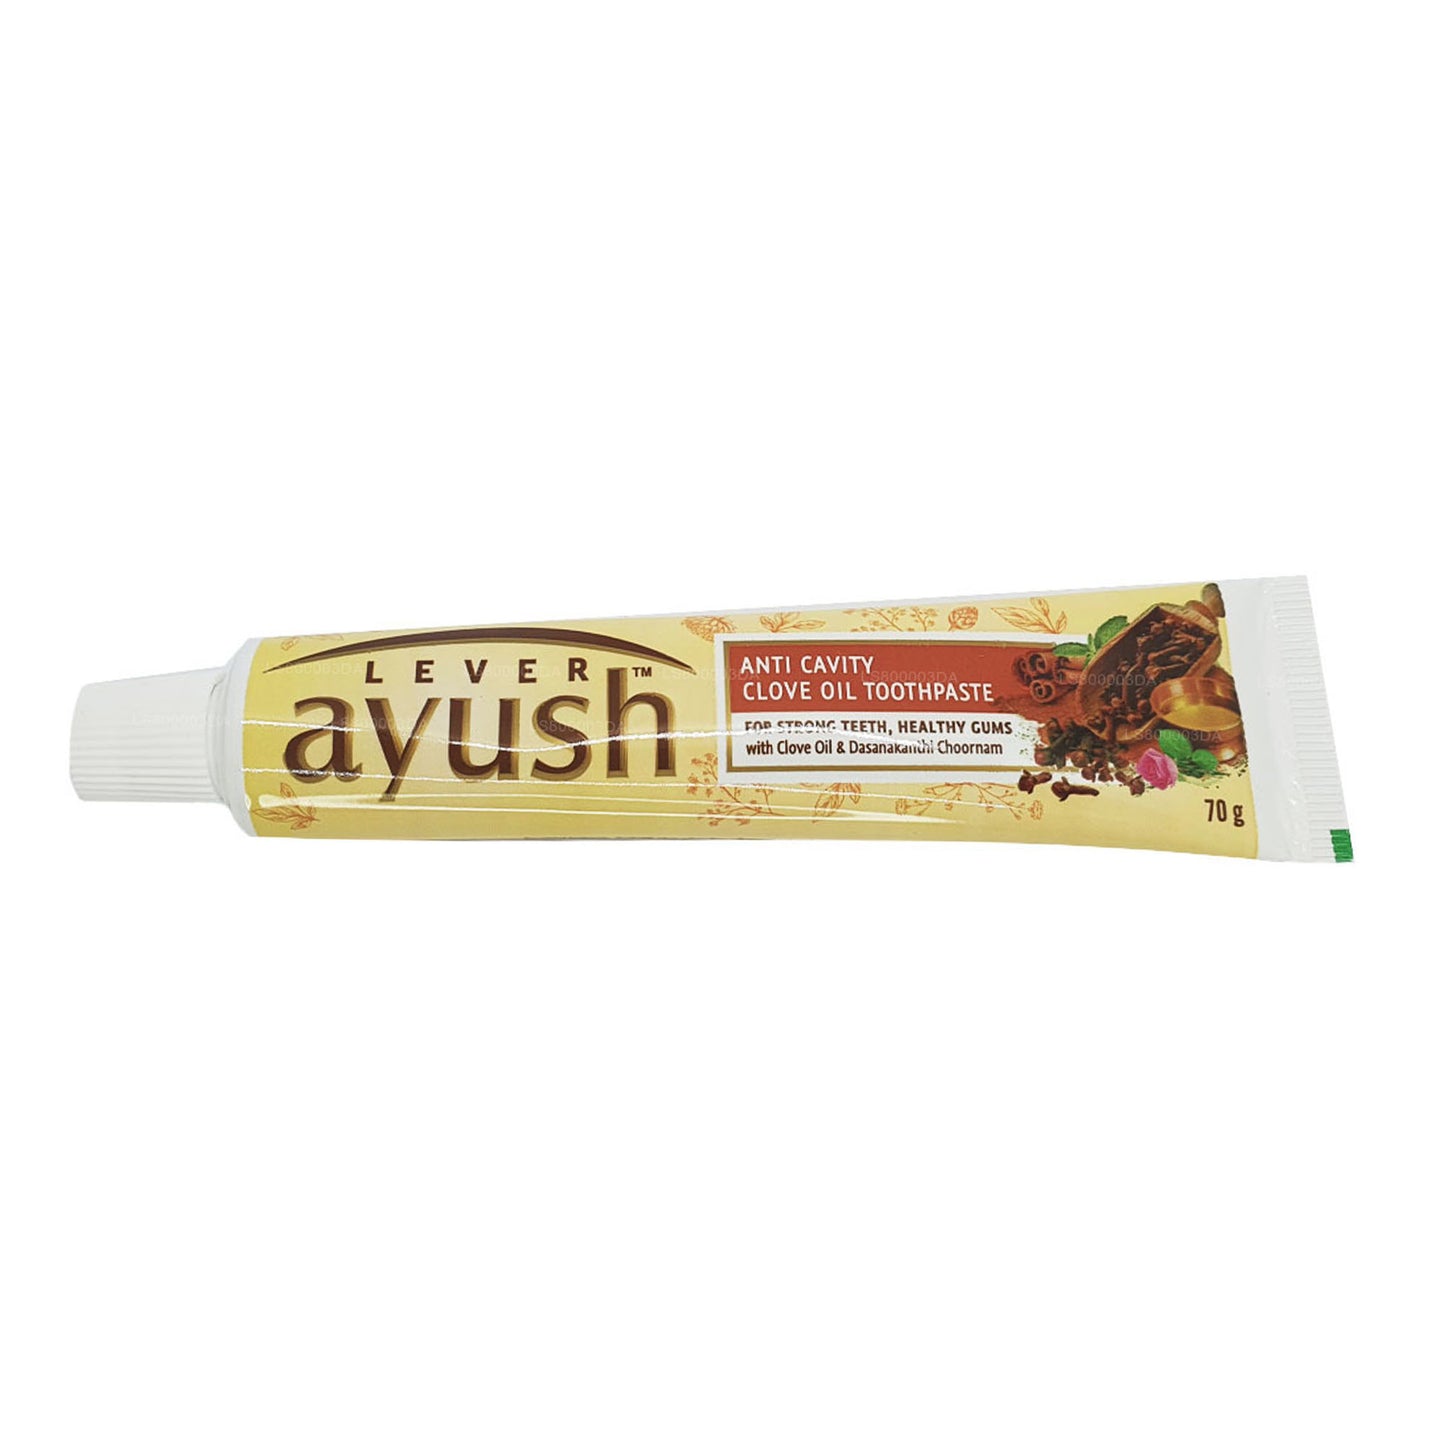 Tandpasta met kruidnagelolie tegen caviteit van Ayush